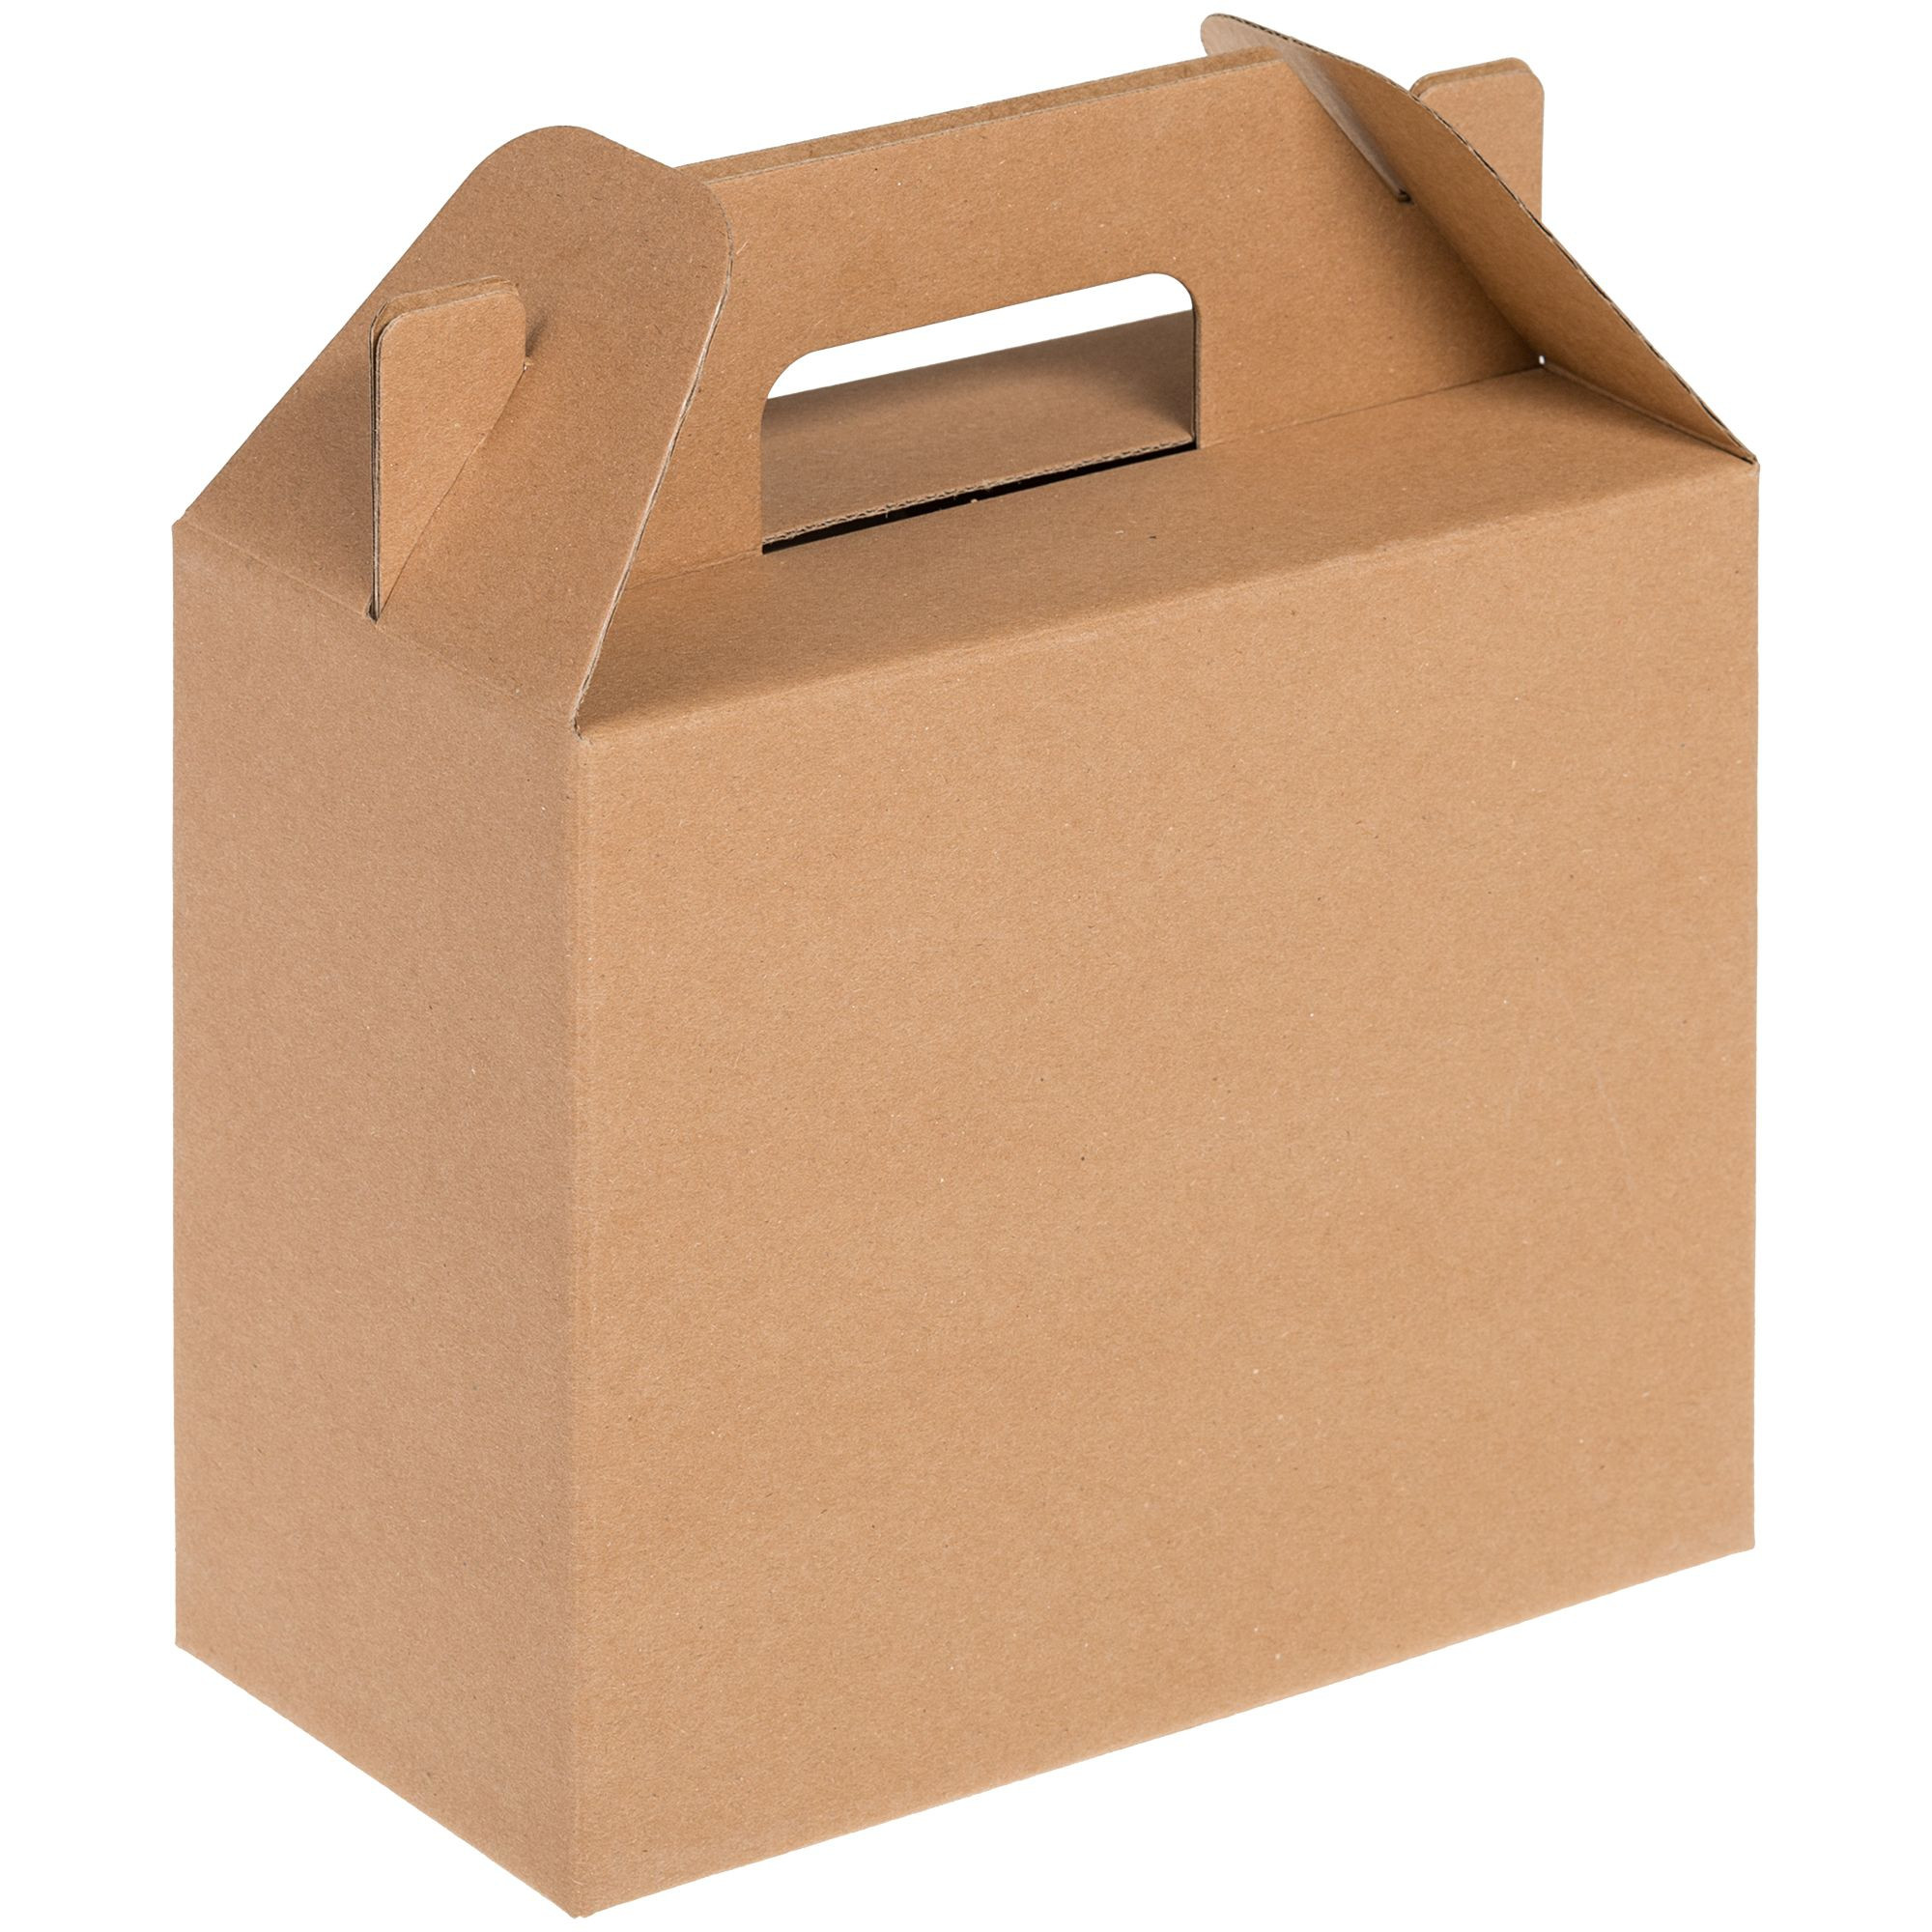 Картонная коробка для подарка. Коробка самосборная крафт. Коробка in Case l, крафт (арт. 6936.00). Коробка самосборная 35*35*10. Коробка самосборная крафт 23х23х8 см.